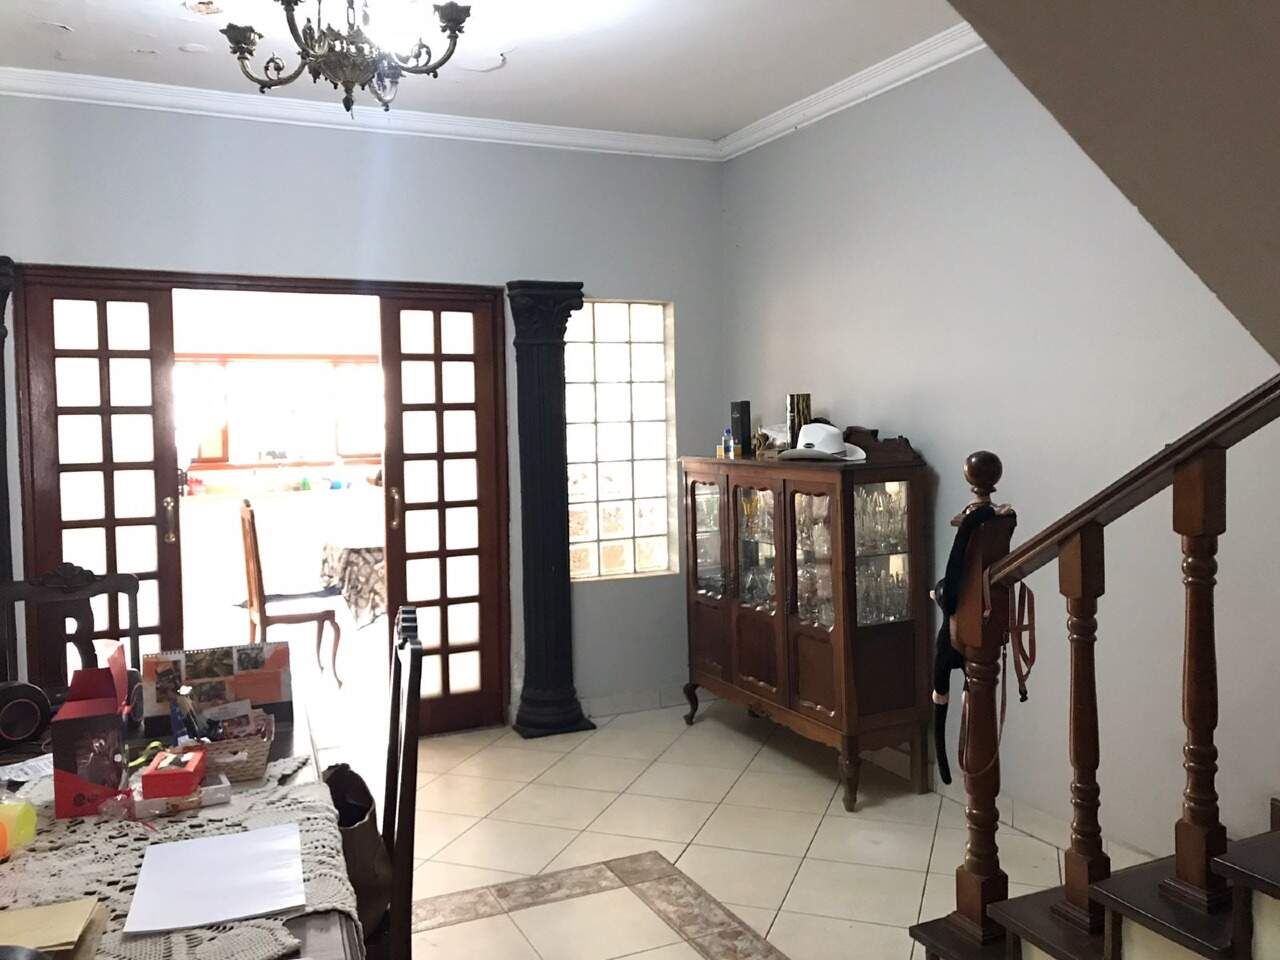 Casa à venda, 3 quartos, sendo 2 suítes, no bairro Cidade Alta em Piracicaba - SP